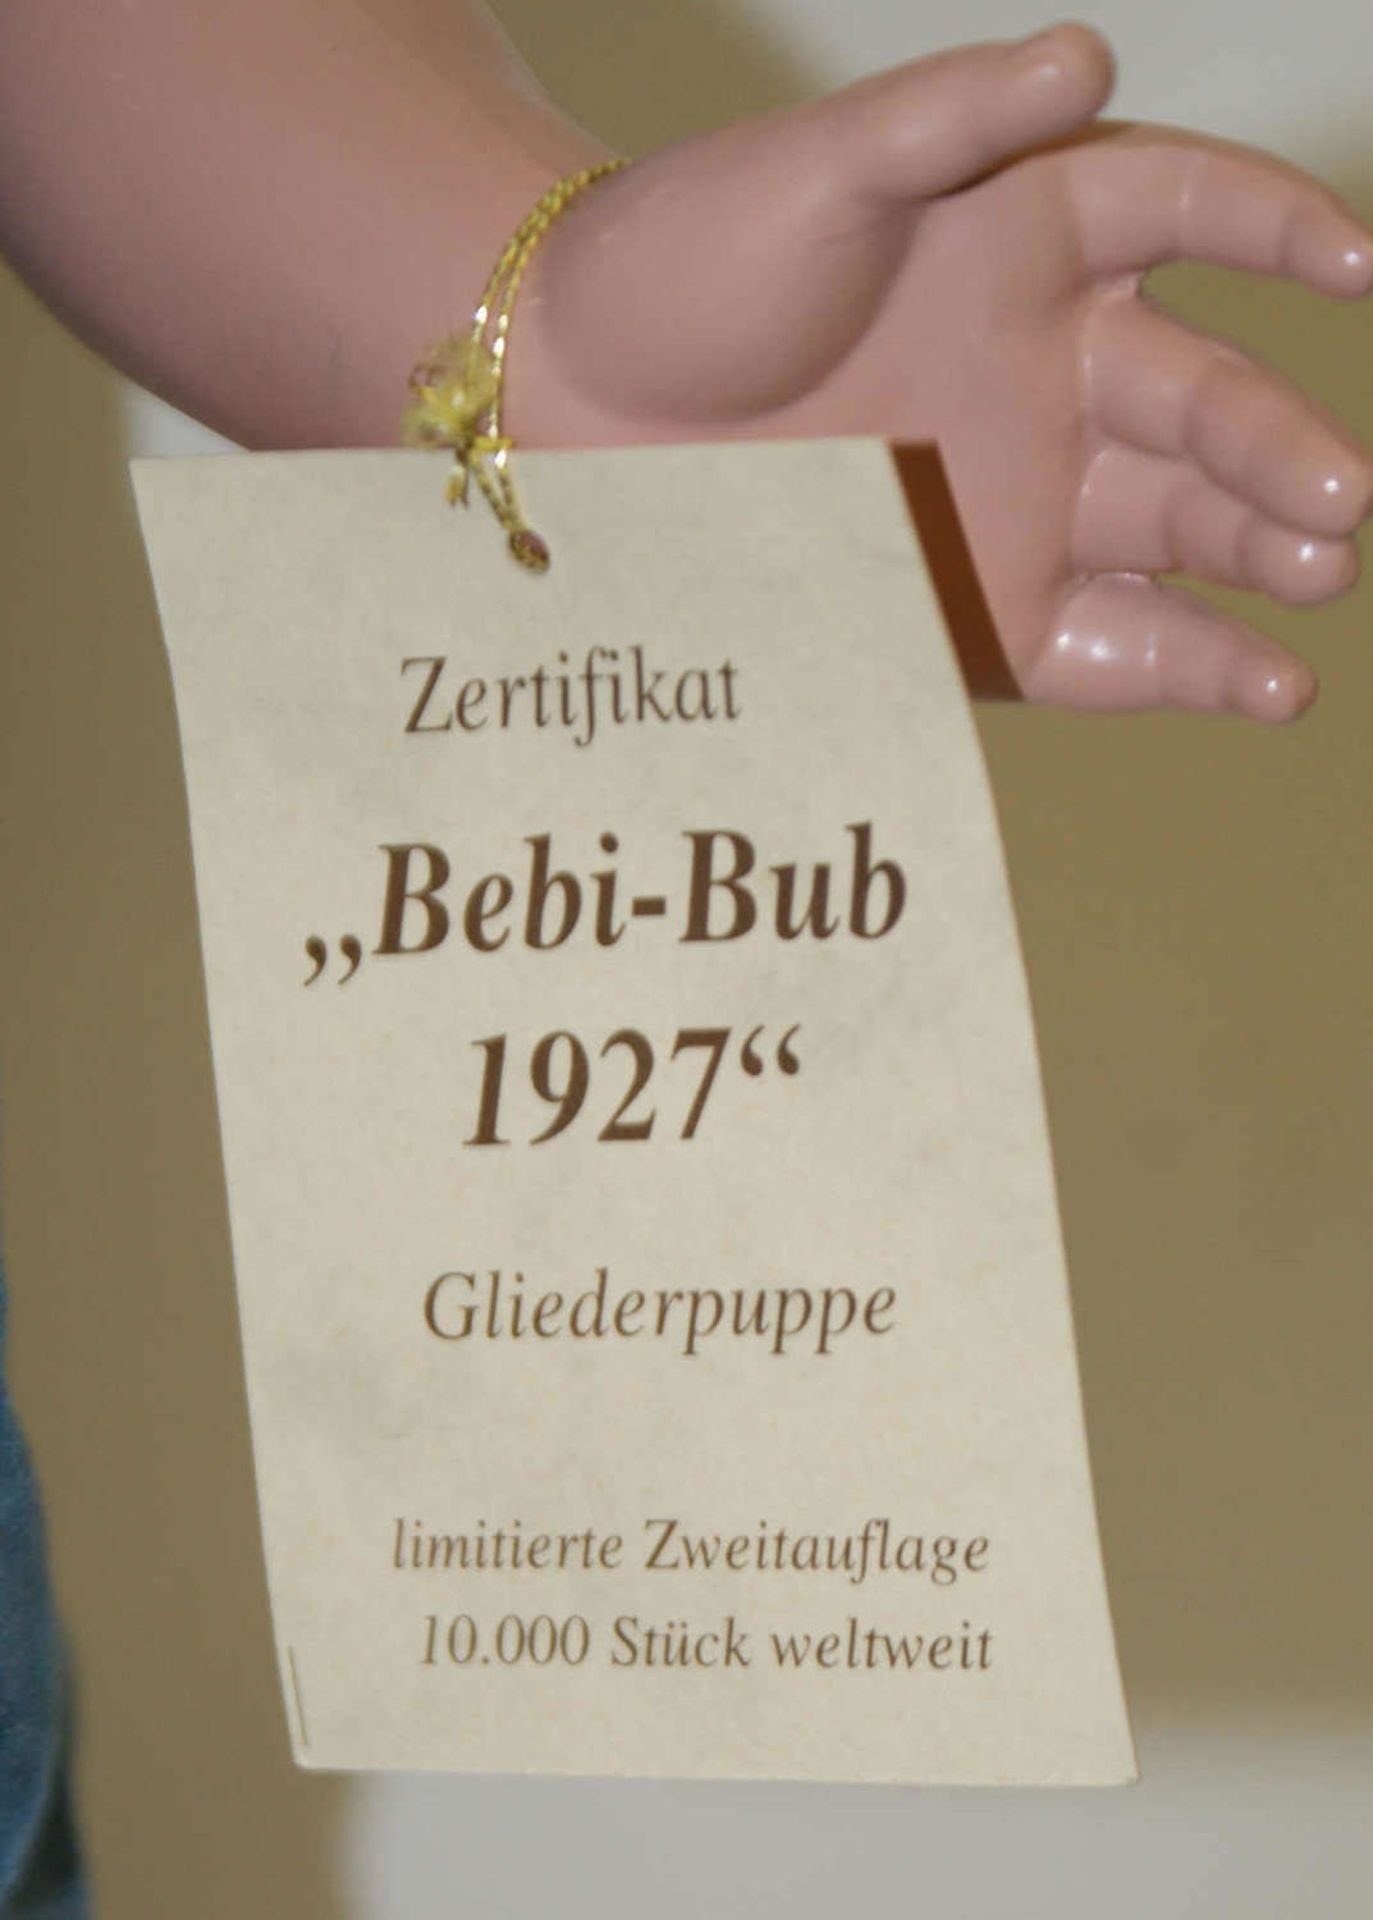 Schildkröt Puppe "Bebi-Bub 1927", Gliederpuppe, limitierte Zweitauflage 10.000 Stück weltweit. - Bild 3 aus 4